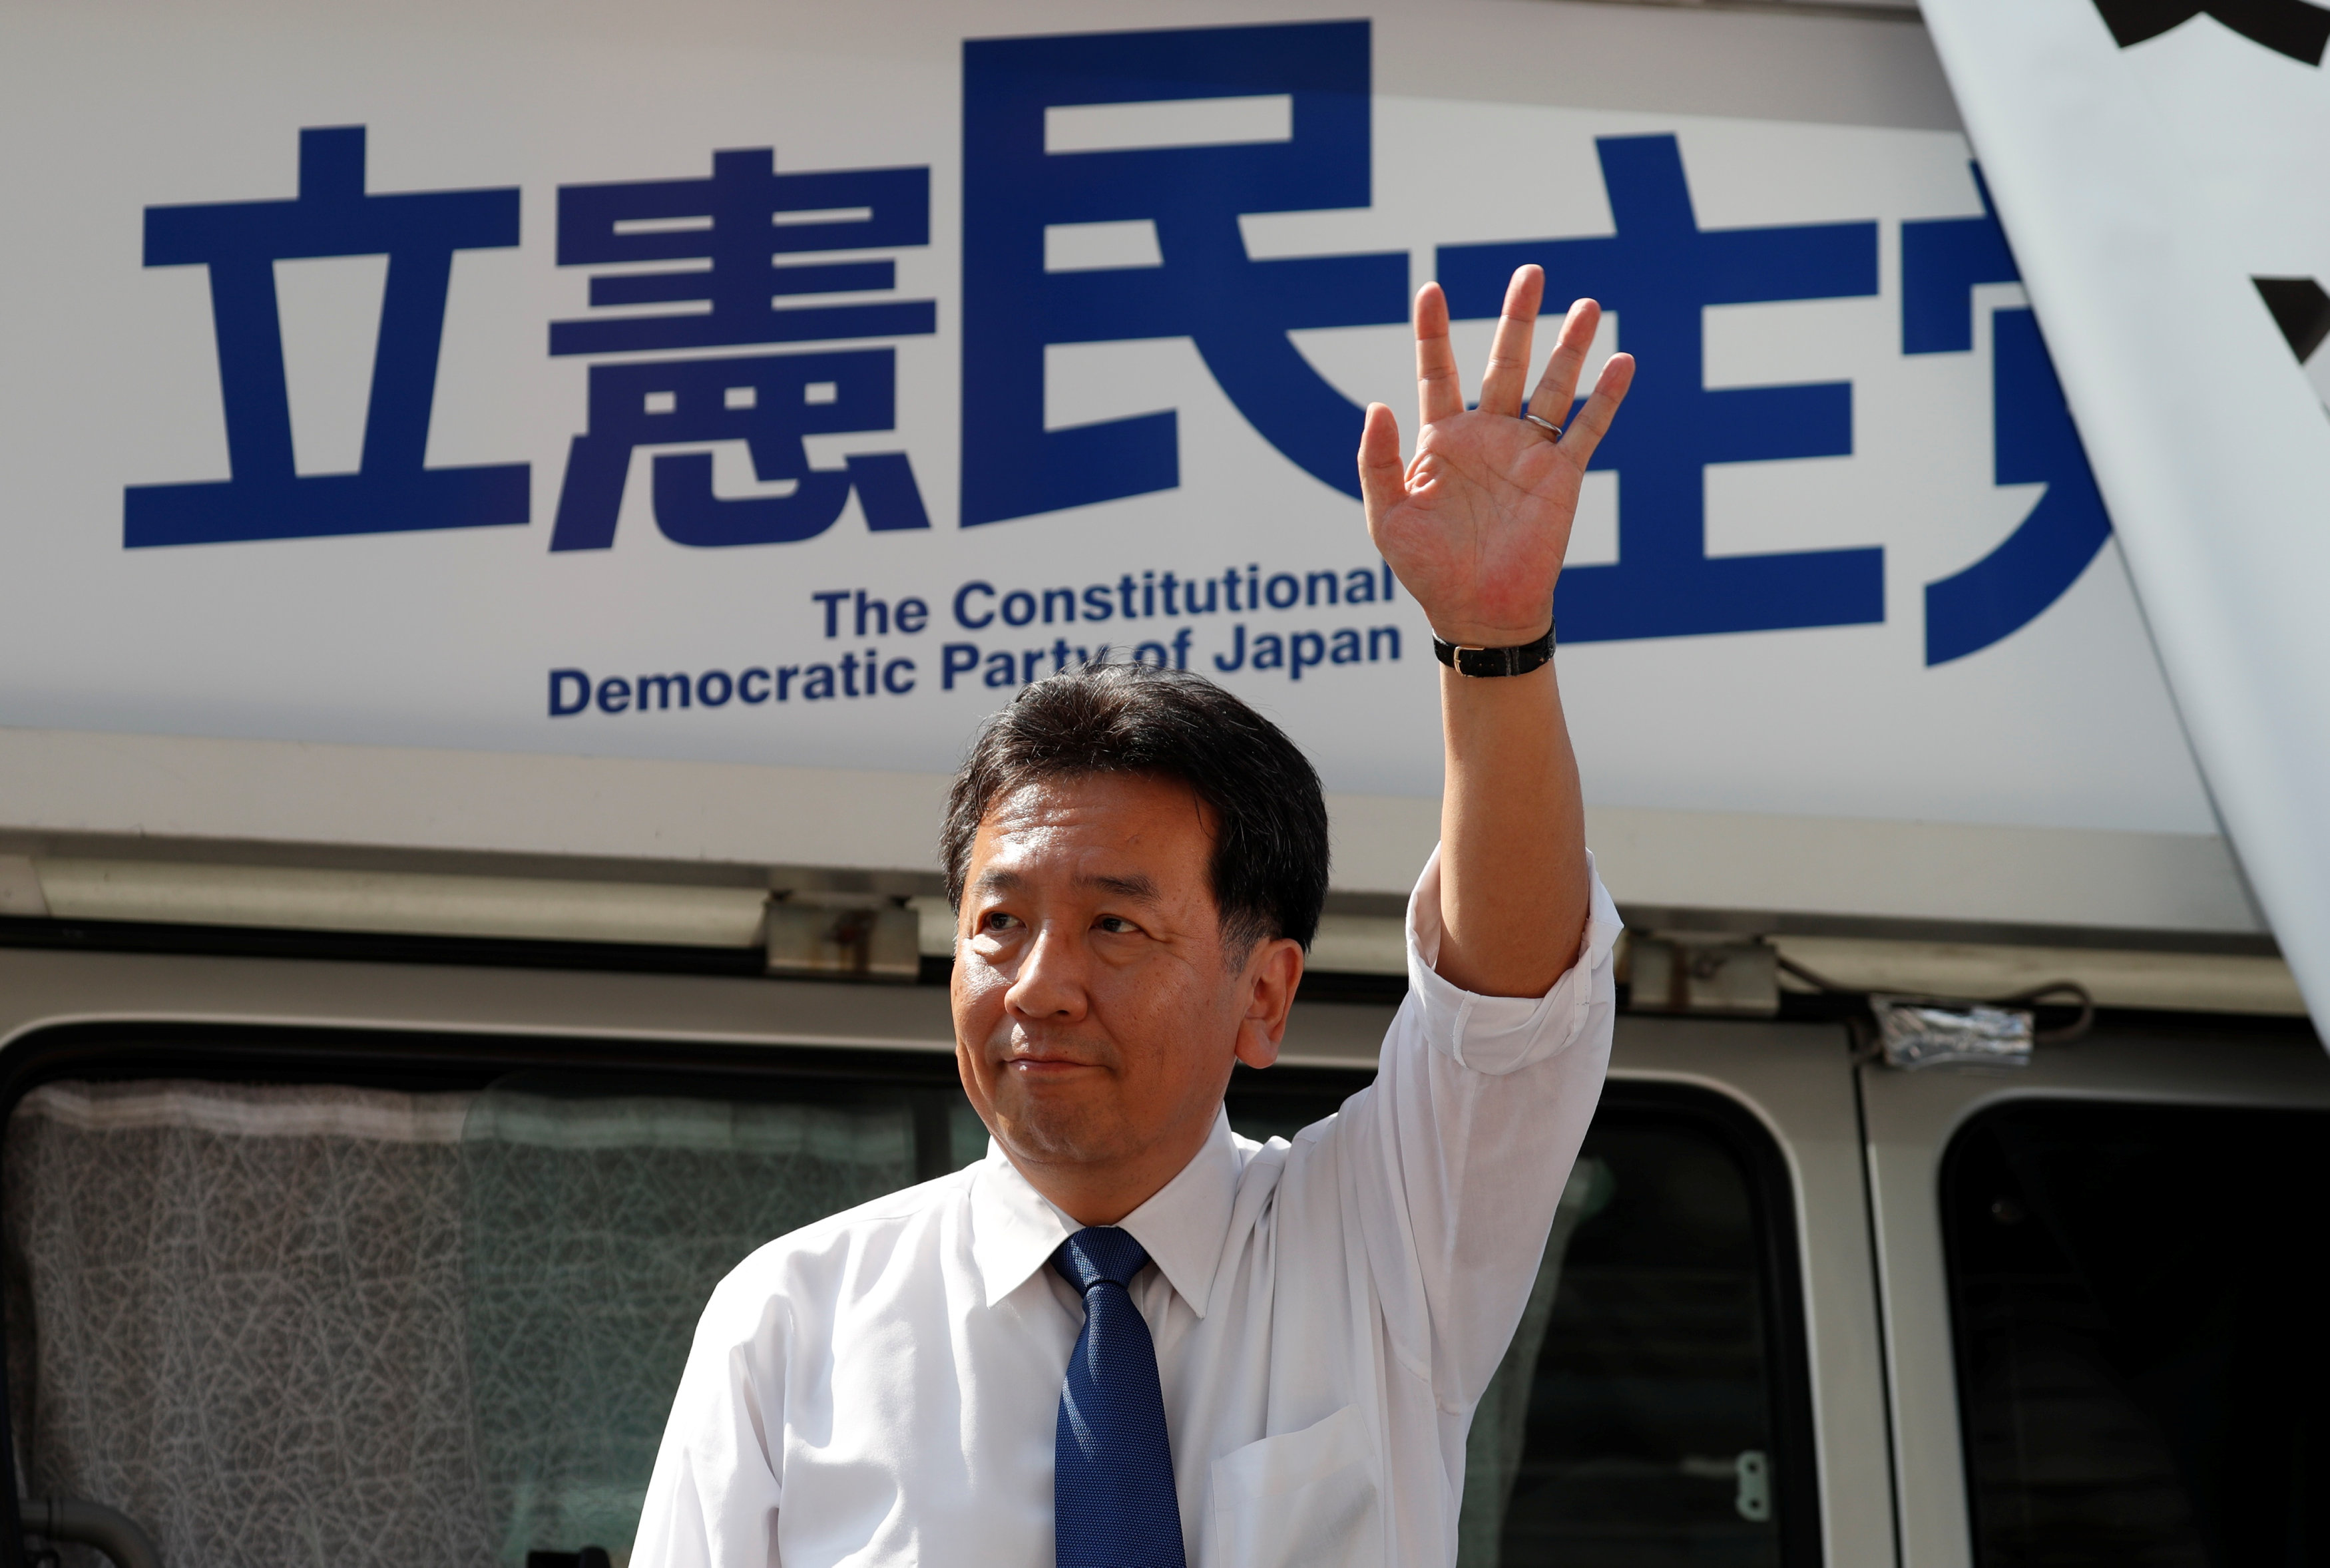 جولة انتخابية لزعيم الحزب الديمقراطى الدستورى اليابانى